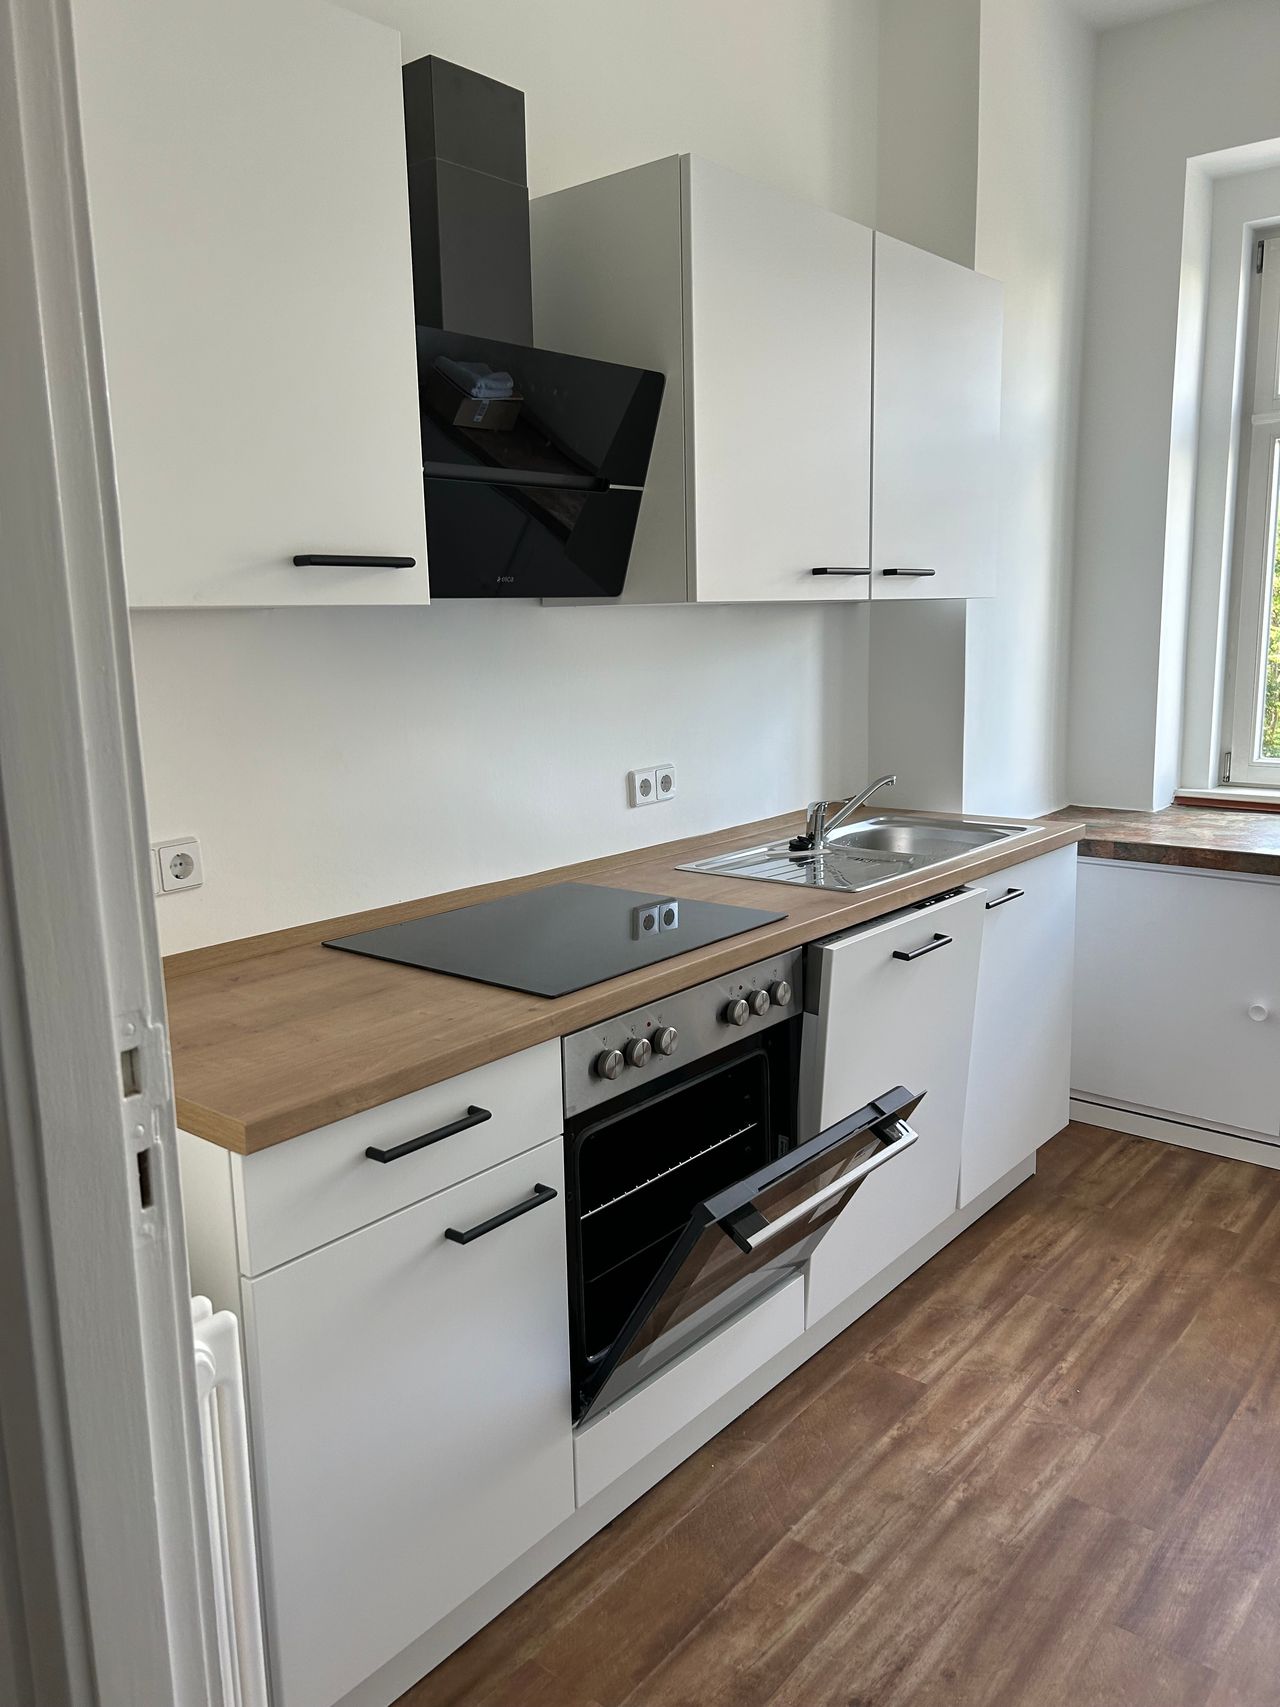 New flat in Friedrichshain